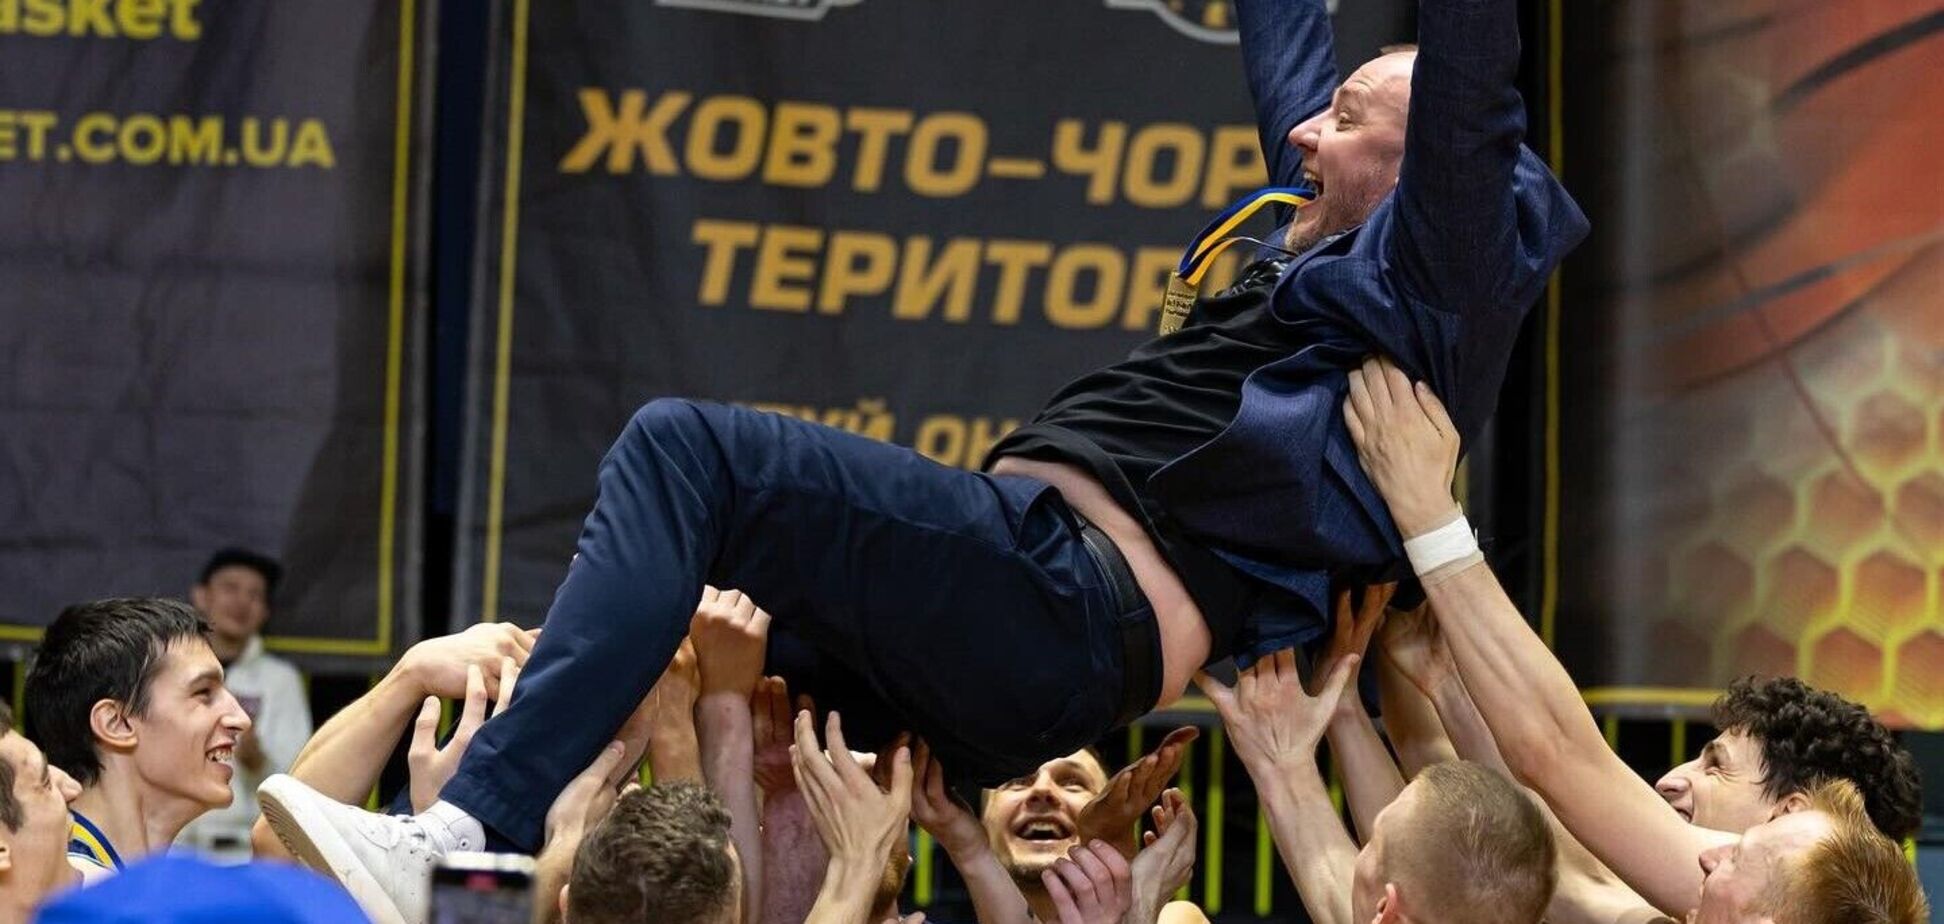 Как в Киеве определили обладателя Кубка Украины по баскетболу: эмоциональное видео